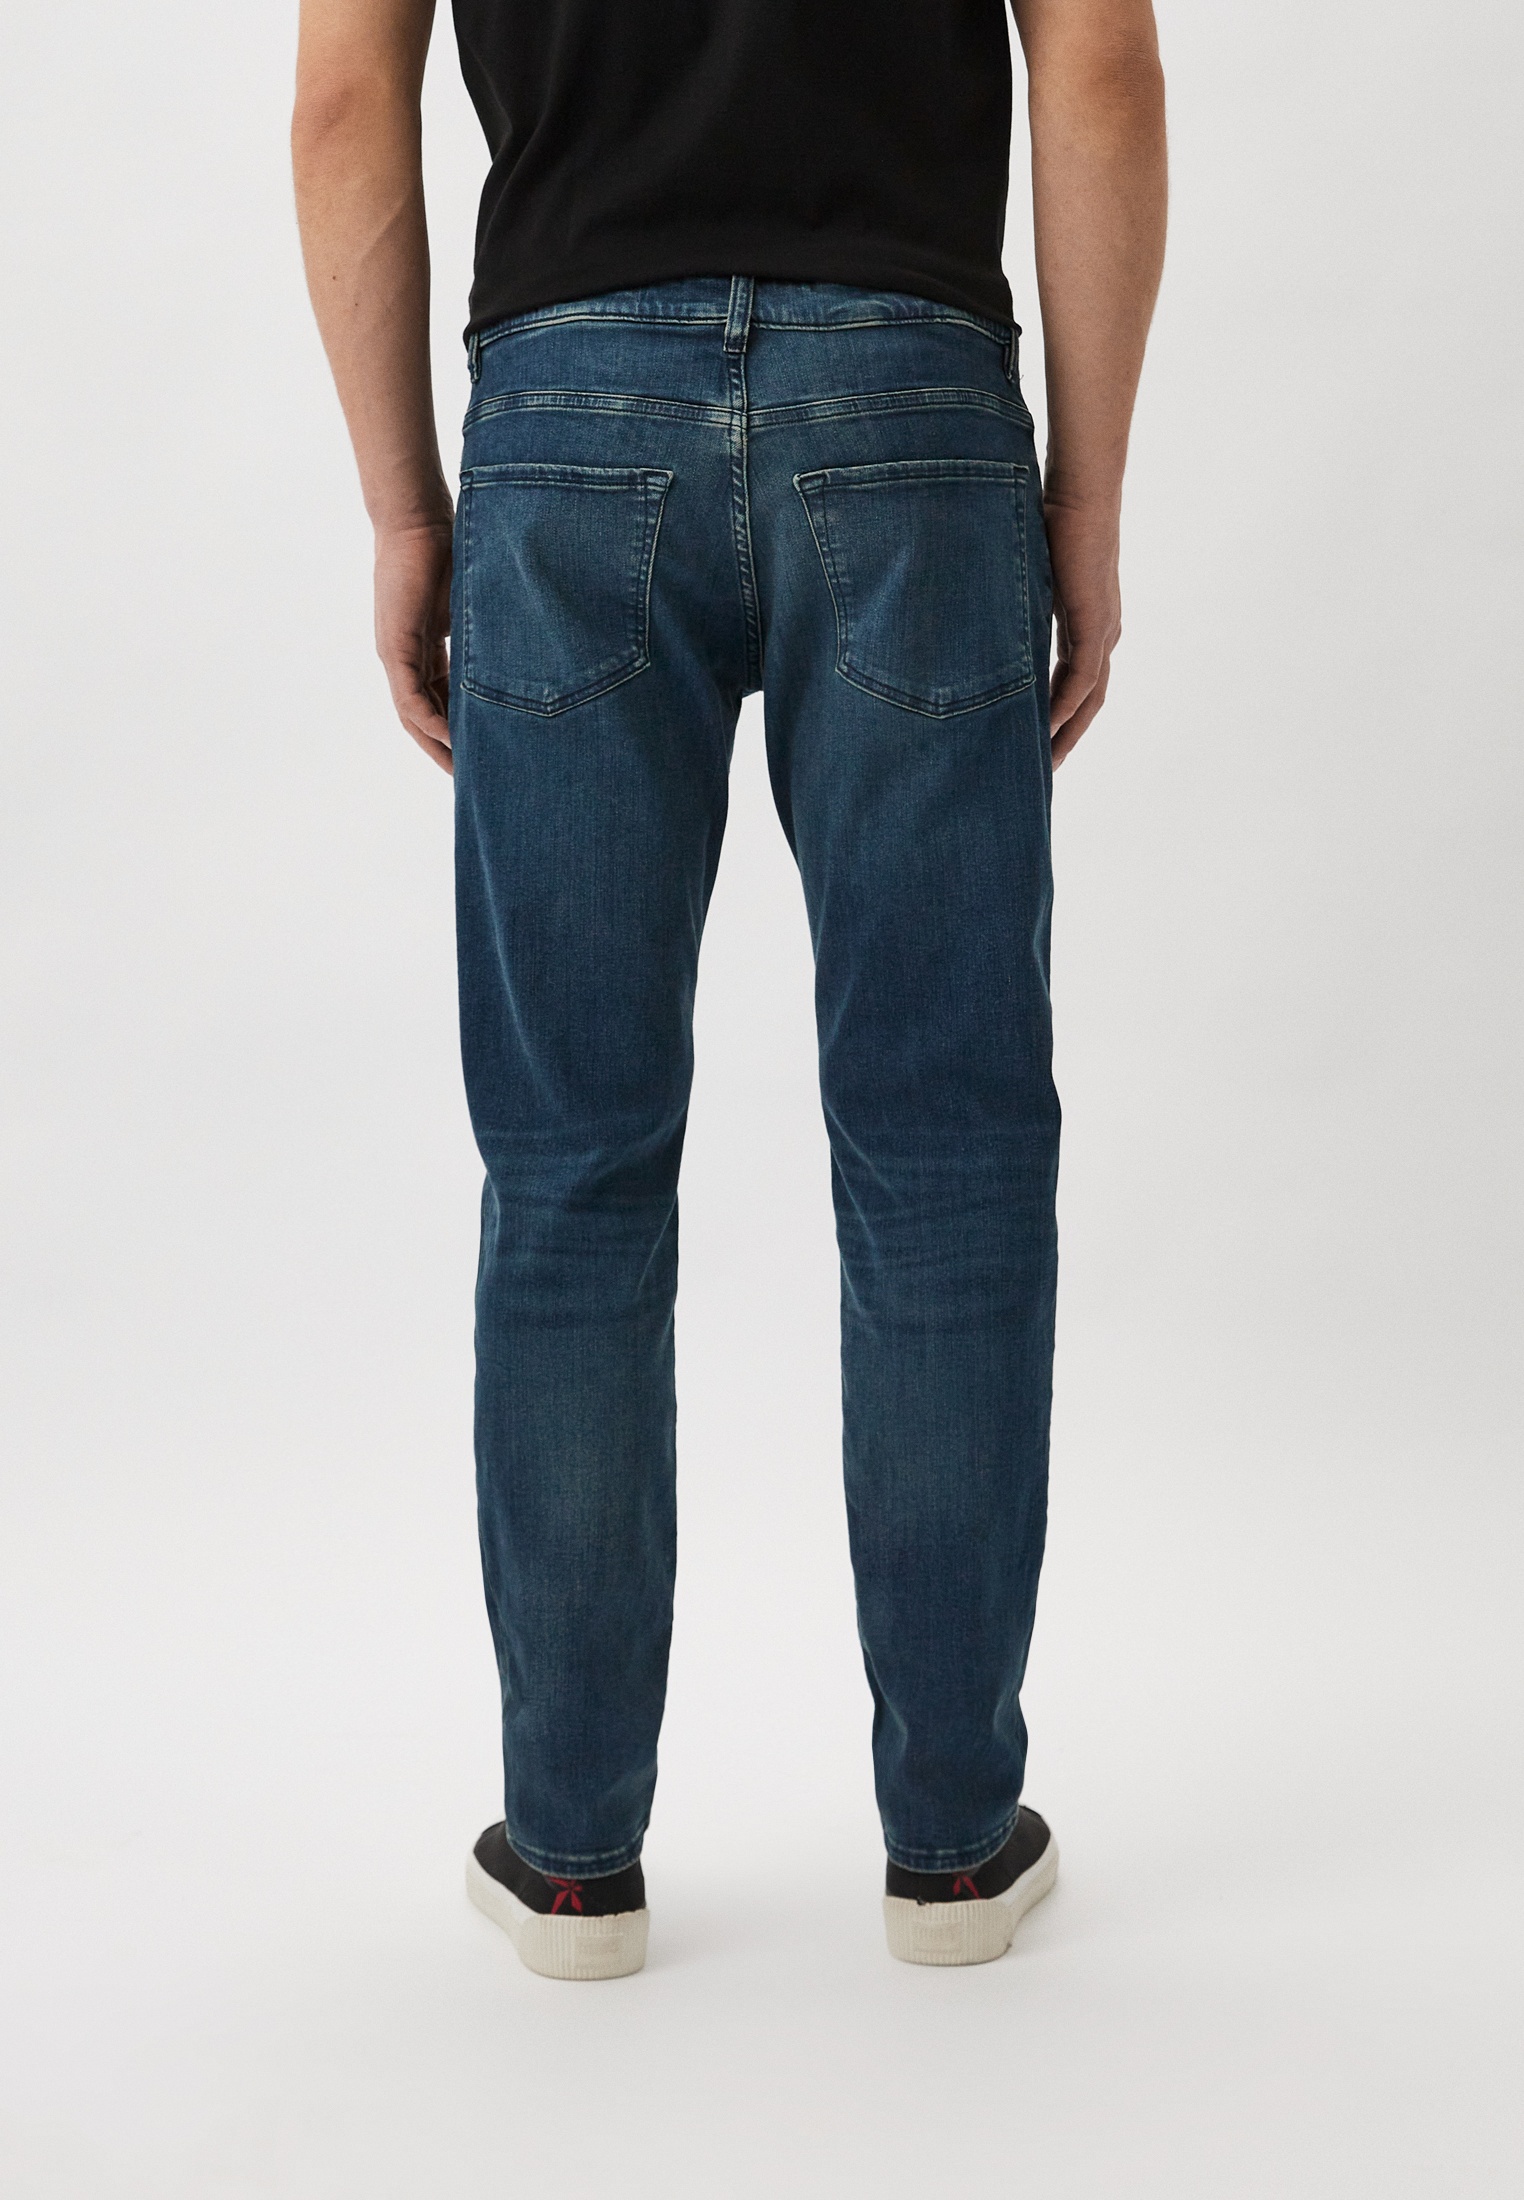 Мужские зауженные джинсы Boss (Босс) 50506707: изображение 3